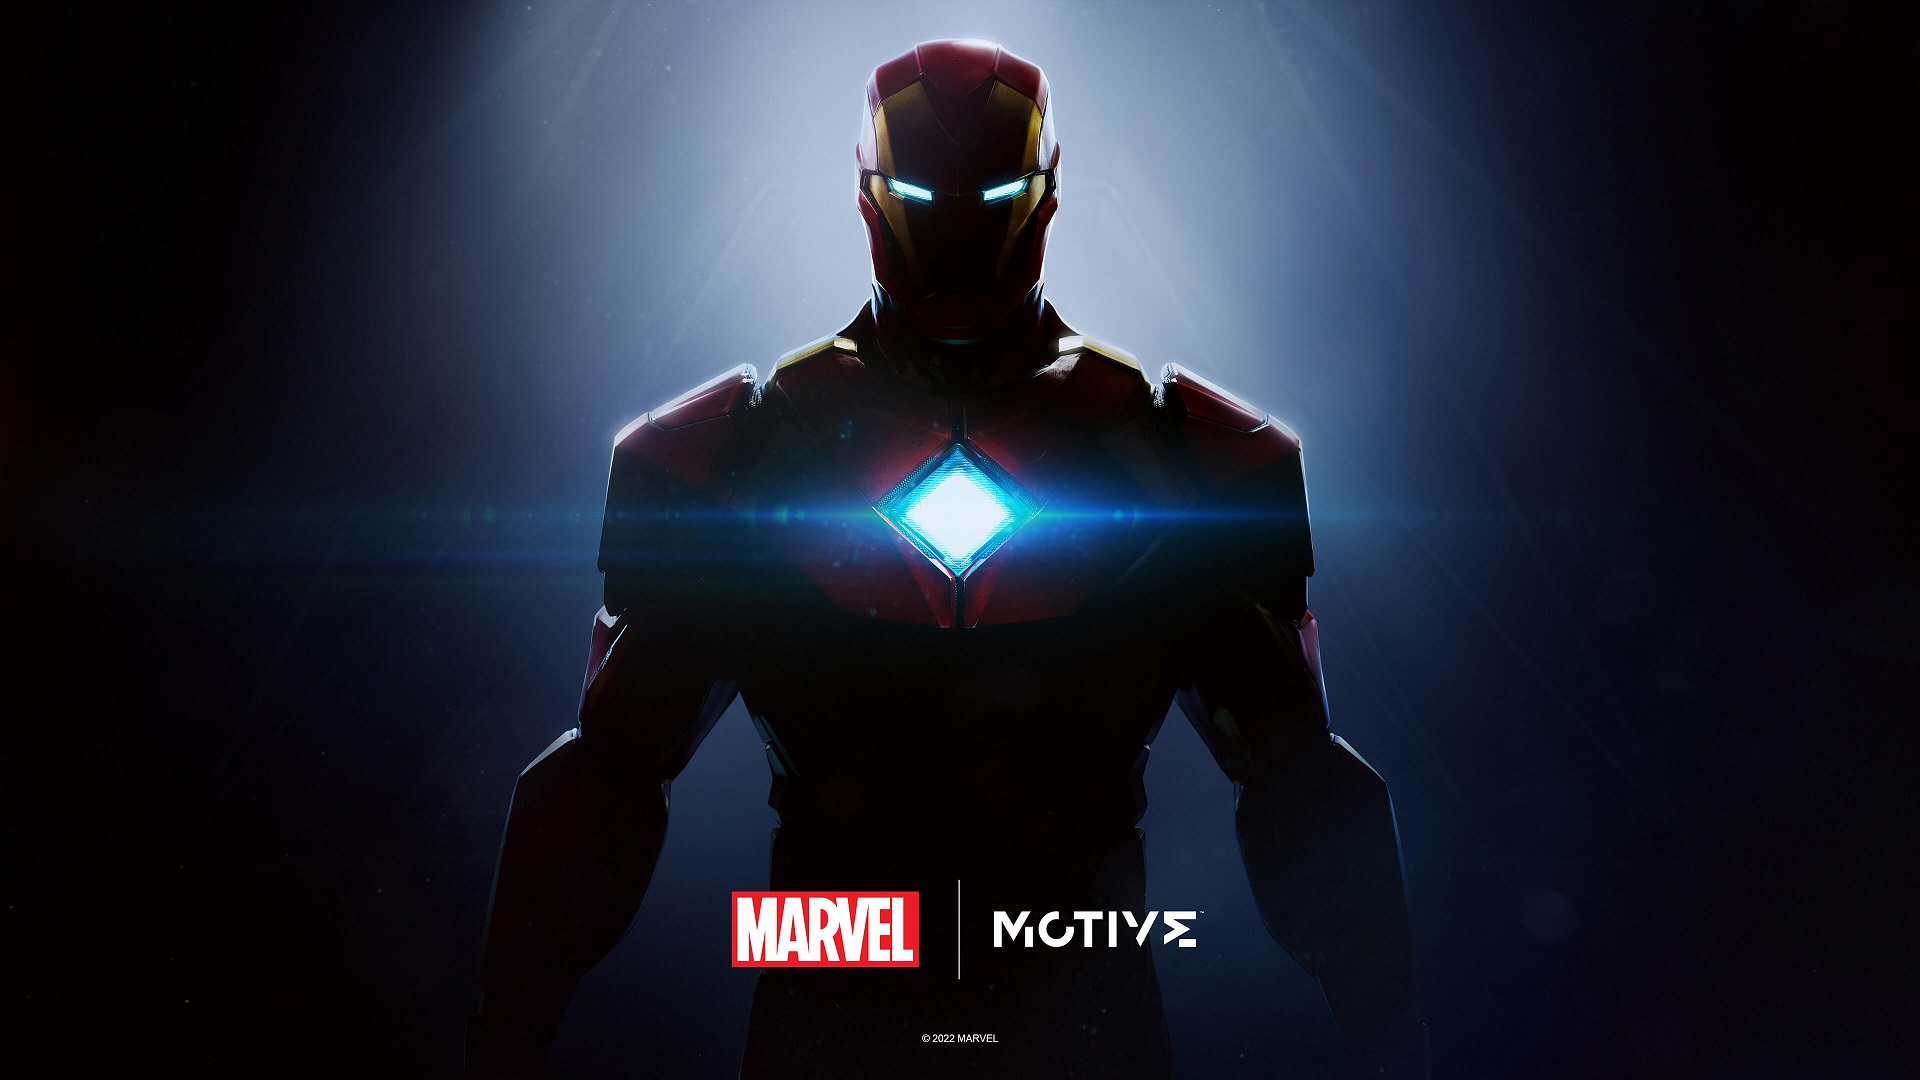 استودیوی Motive به توسعه نسخه بعدی Battlefield در زمانی که Iron Man در حال توسعه است کمک خواهد کرد